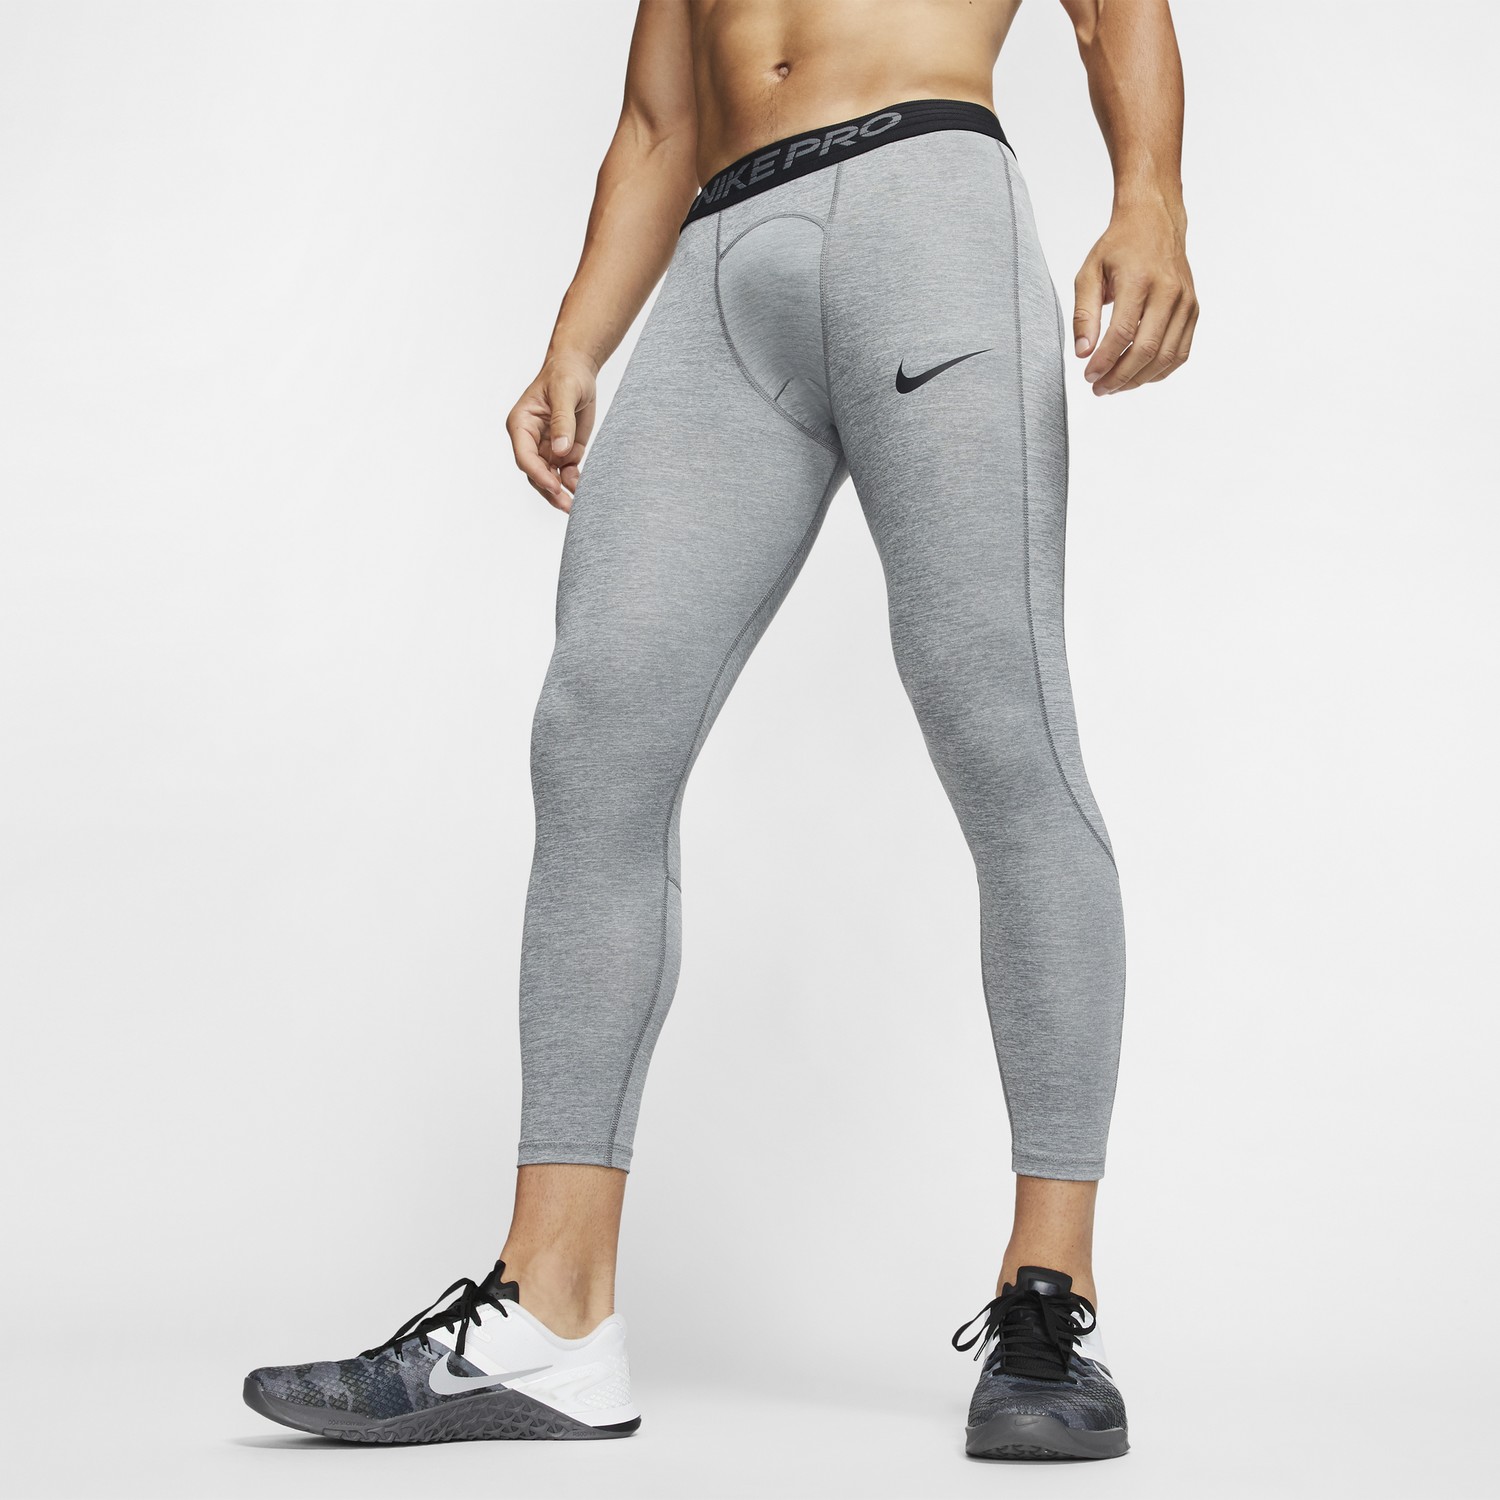 Legging homme Nike Pro gris sur